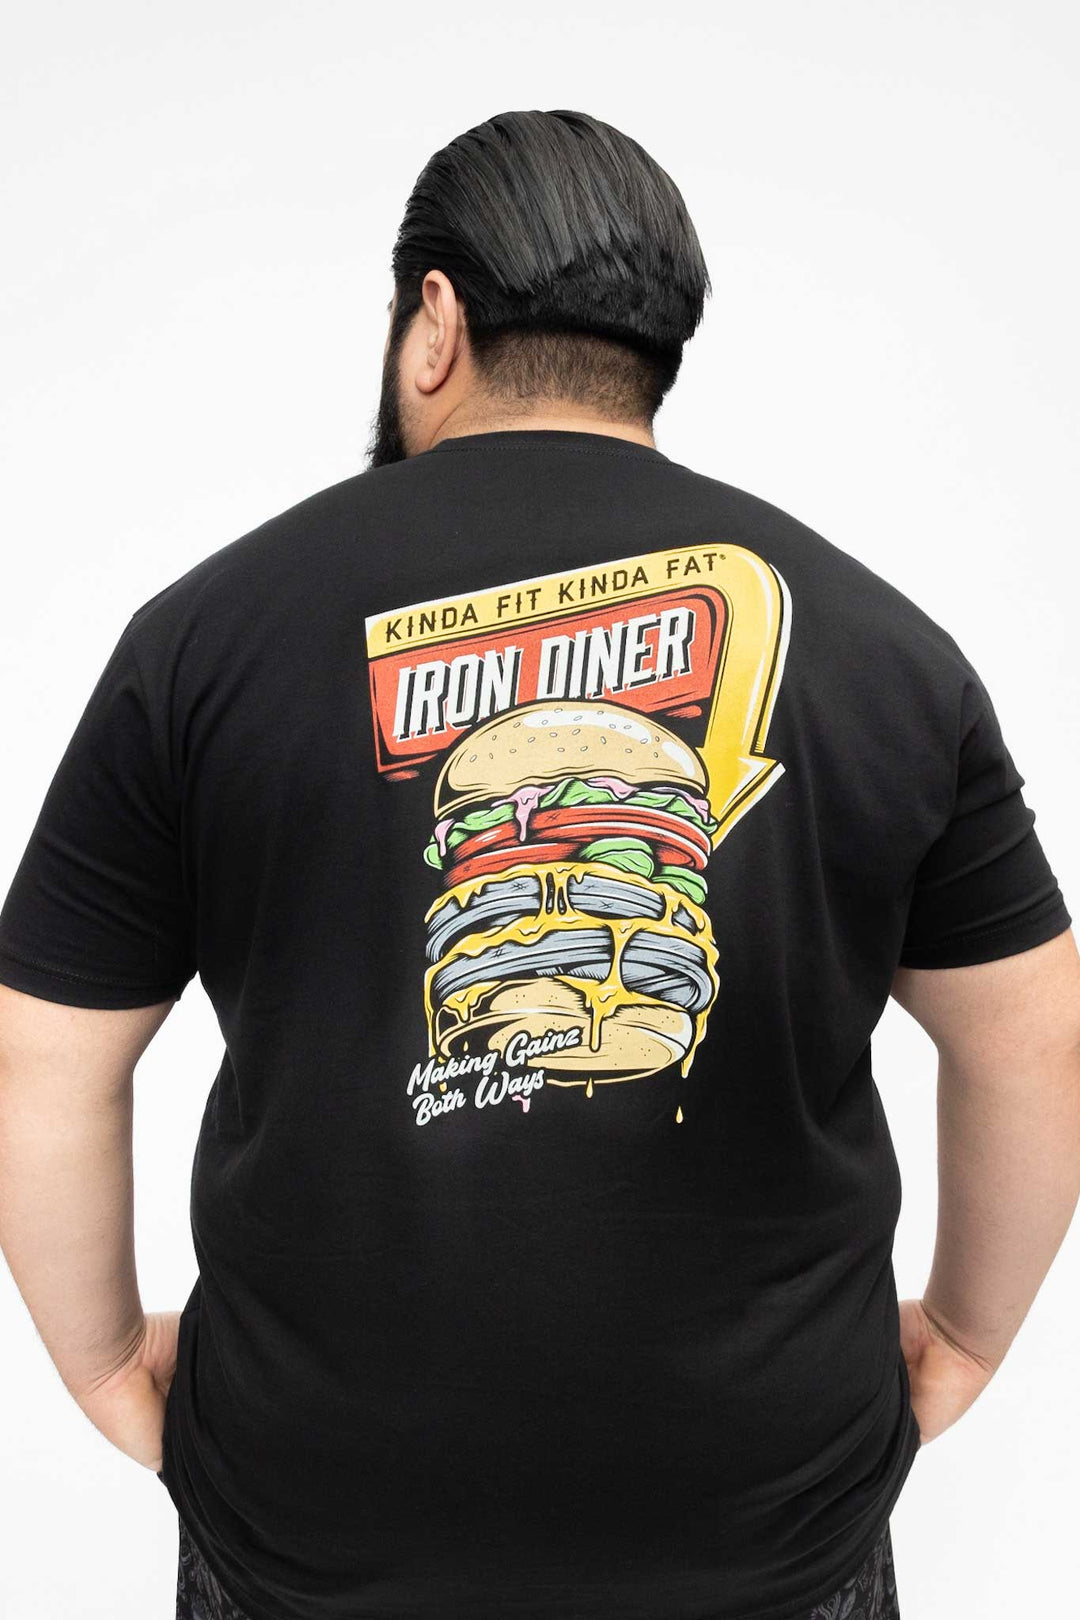 Un peu ajusté un peu gros - T-shirt Iron Diner